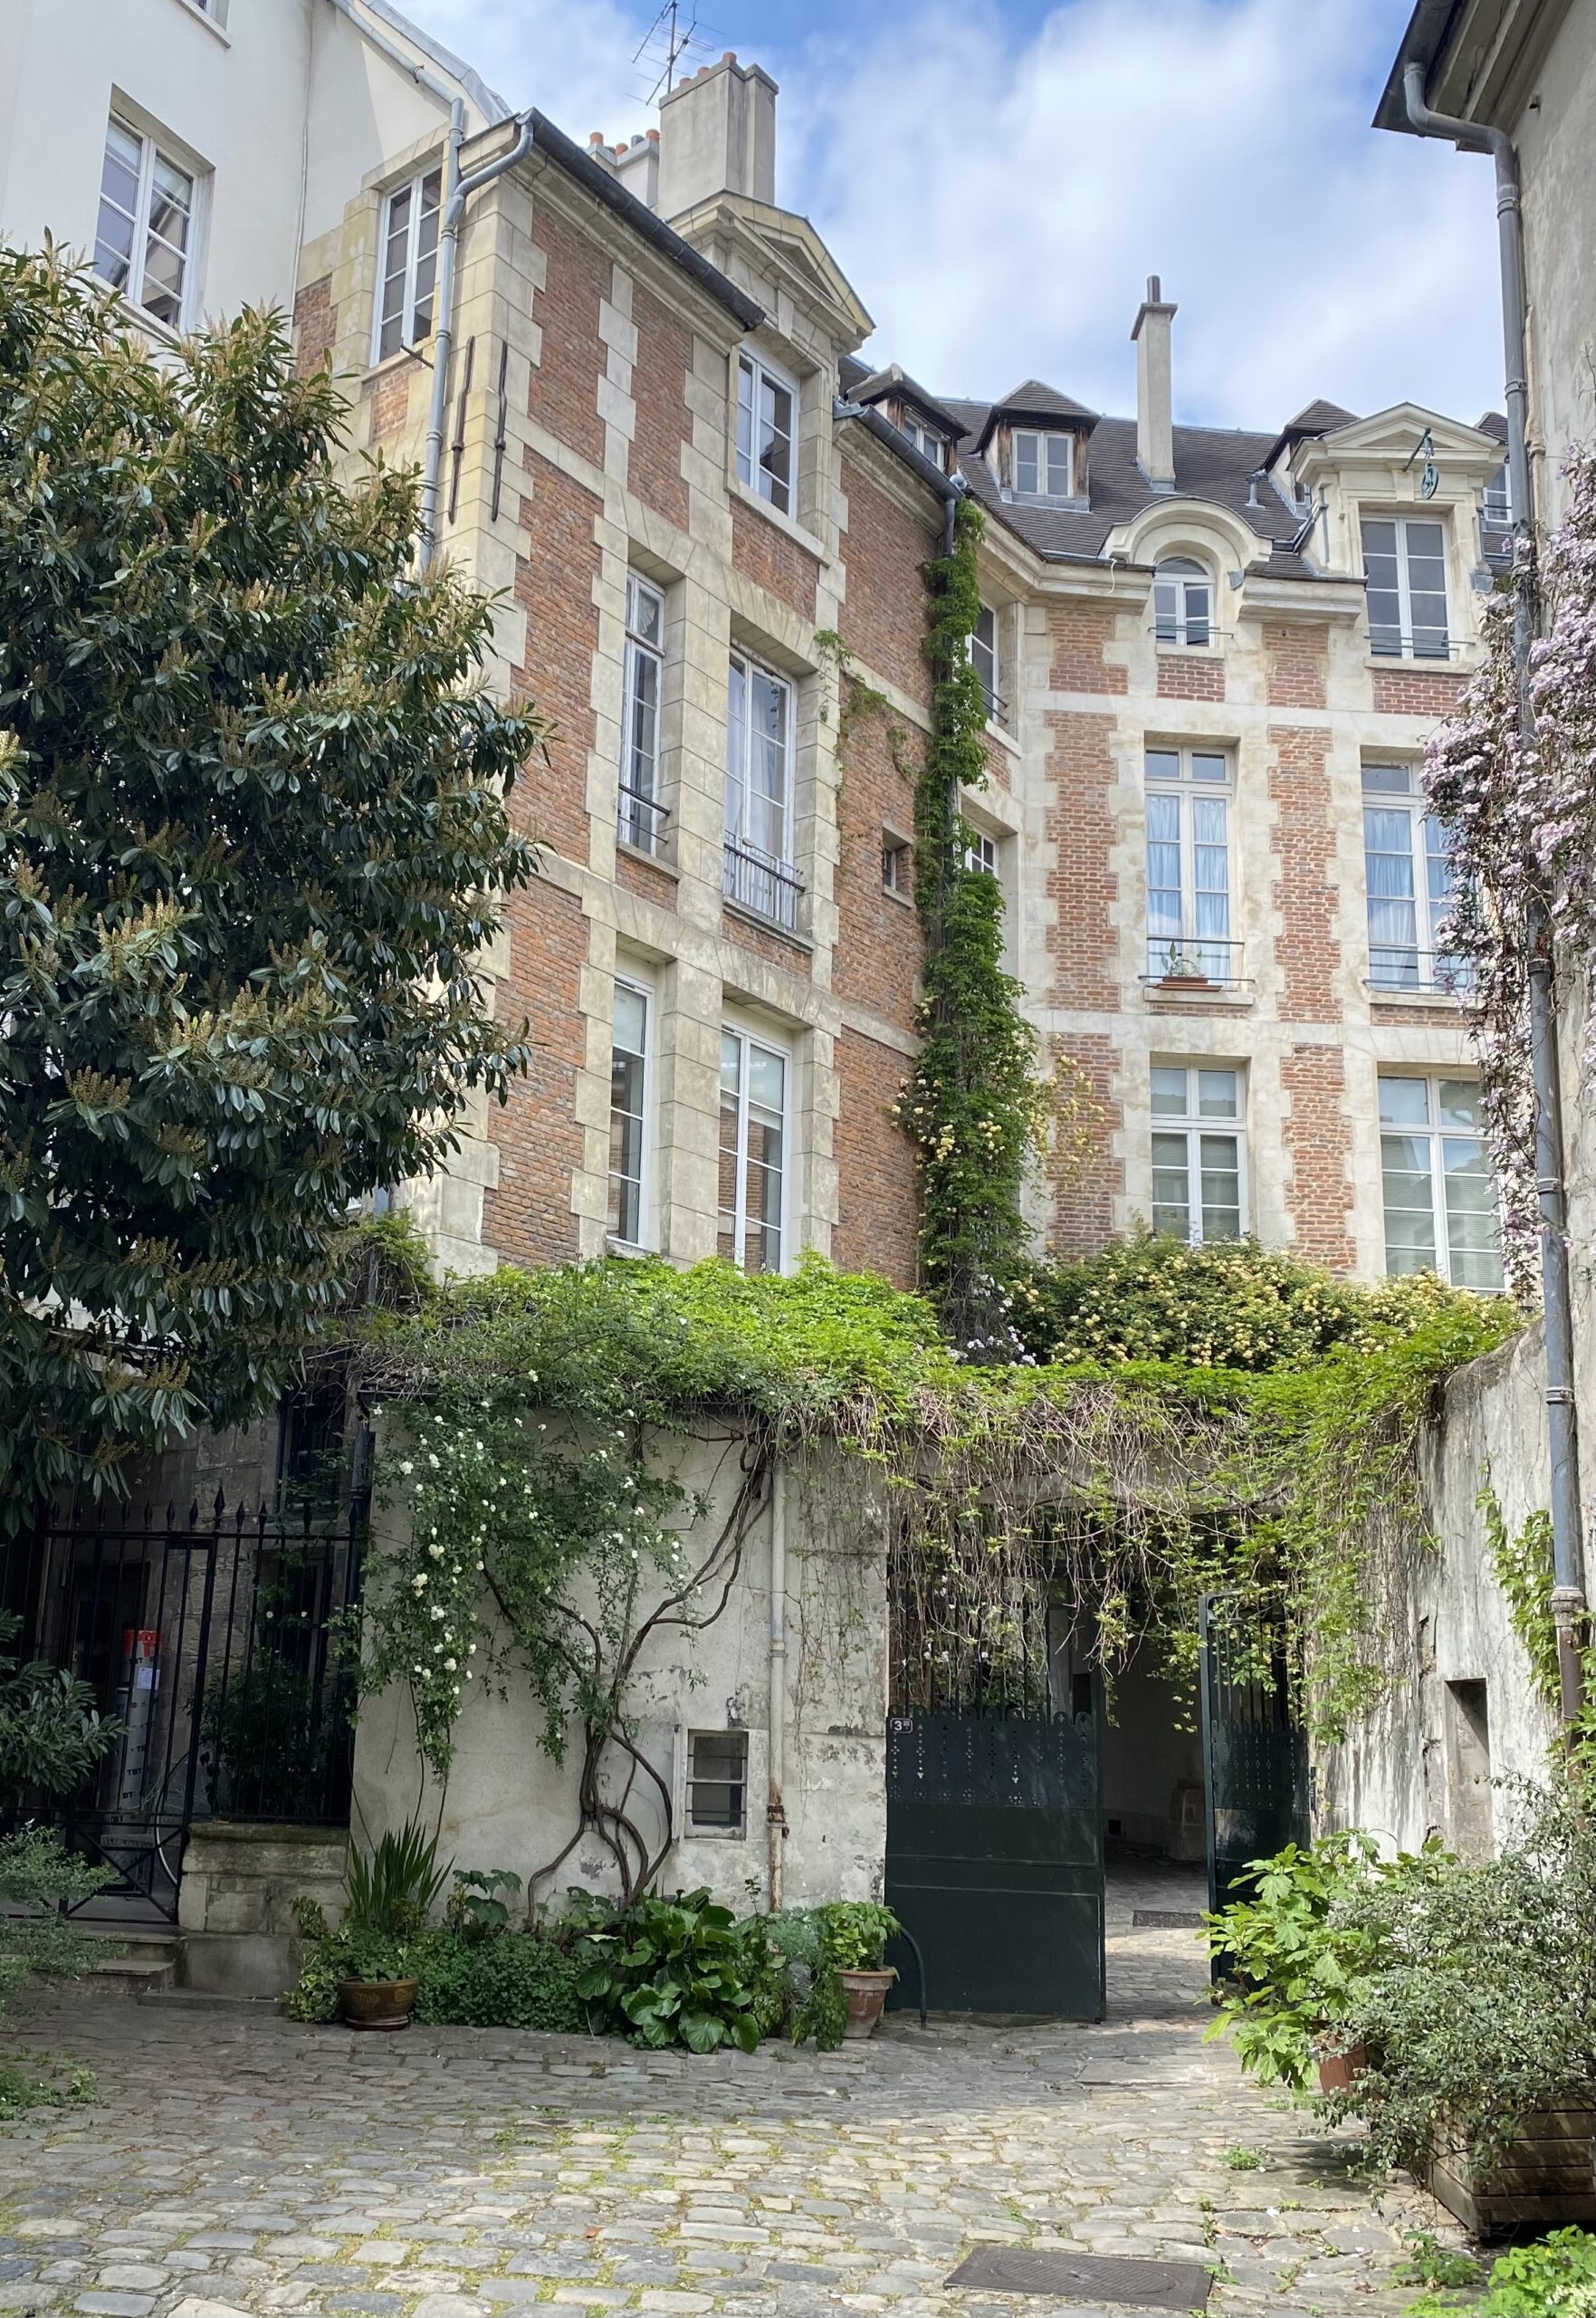 La cour de Rohan à Paris avec ses immeubles 17ème siècle.